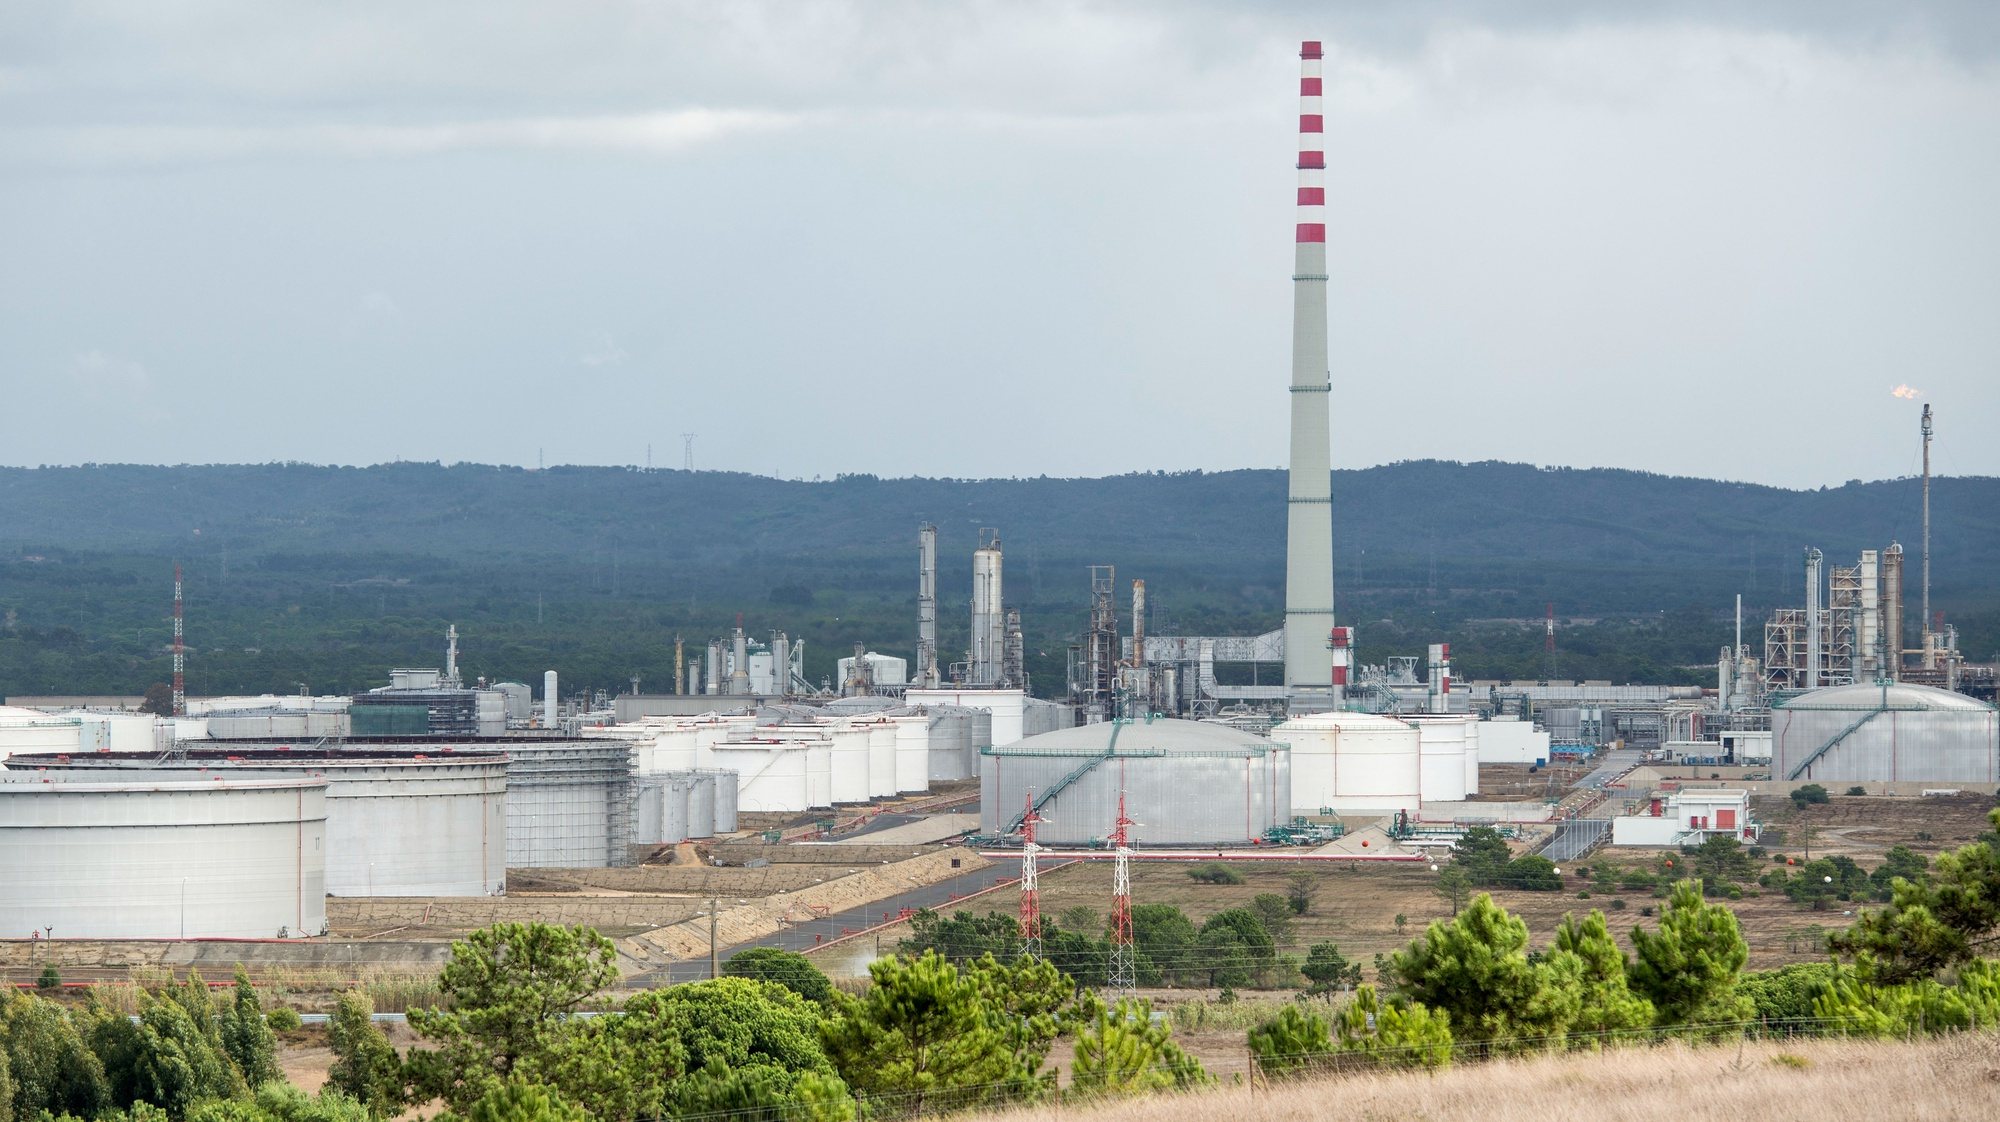 Complexo petrolífero da Galp em Sines, 3 de novembro de 2017. TIAGO CANHOTO /LUSA